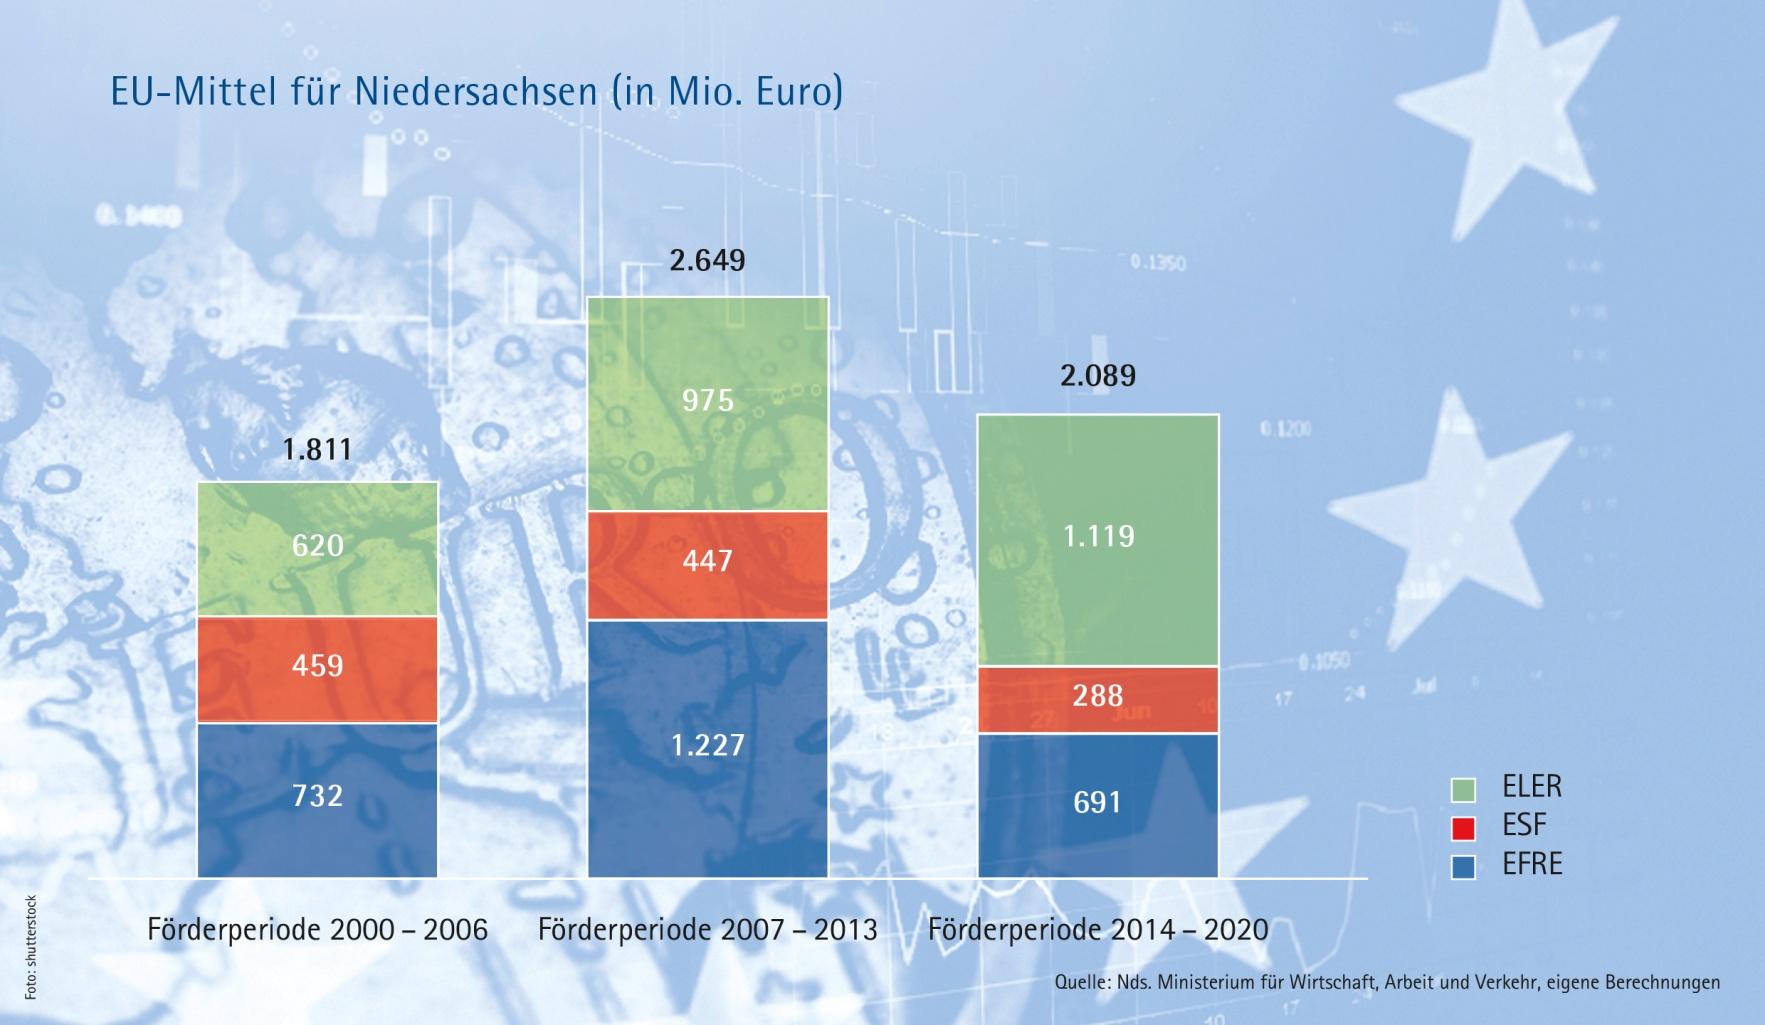 Neue EU-Förderperiode NIHK: Mit weniger Geld mehr erreichen?! Neue Förderperiode stellt Niedersachsen vor neue Herausforderungen Am 1.